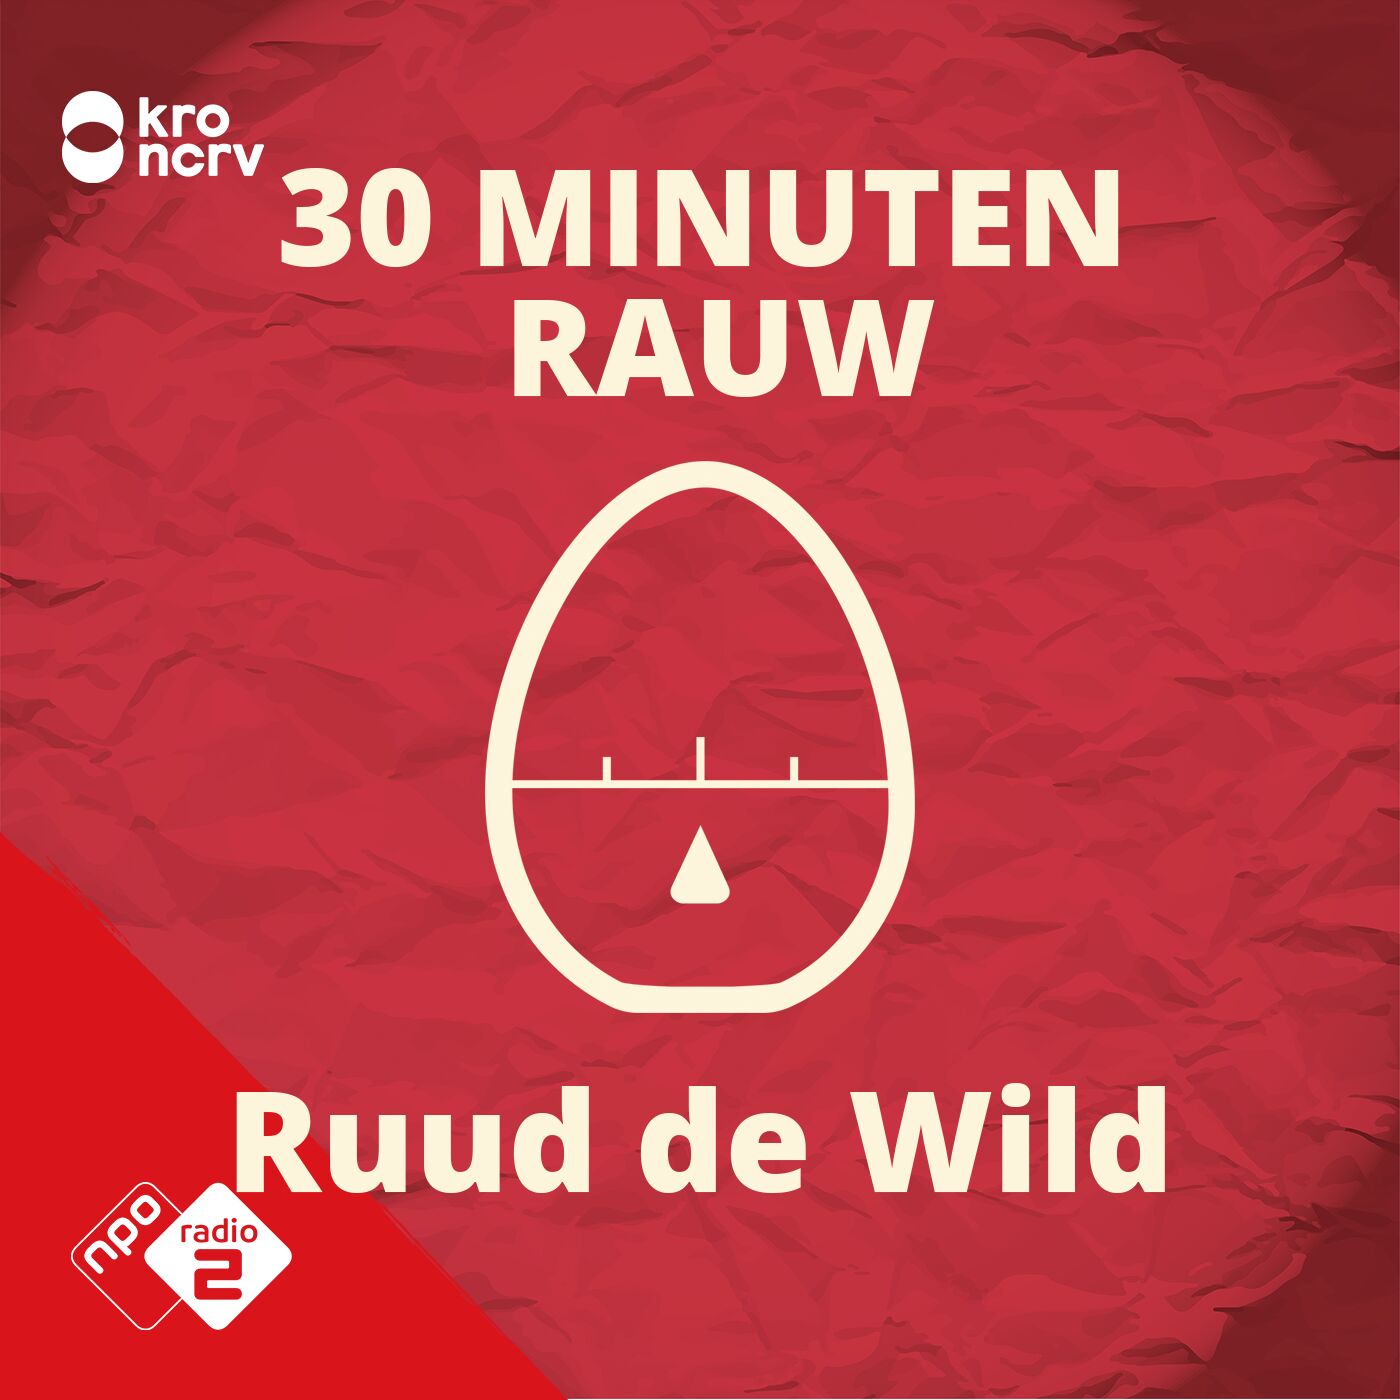 30 MINUTEN RAUW door Ruud de Wild logo